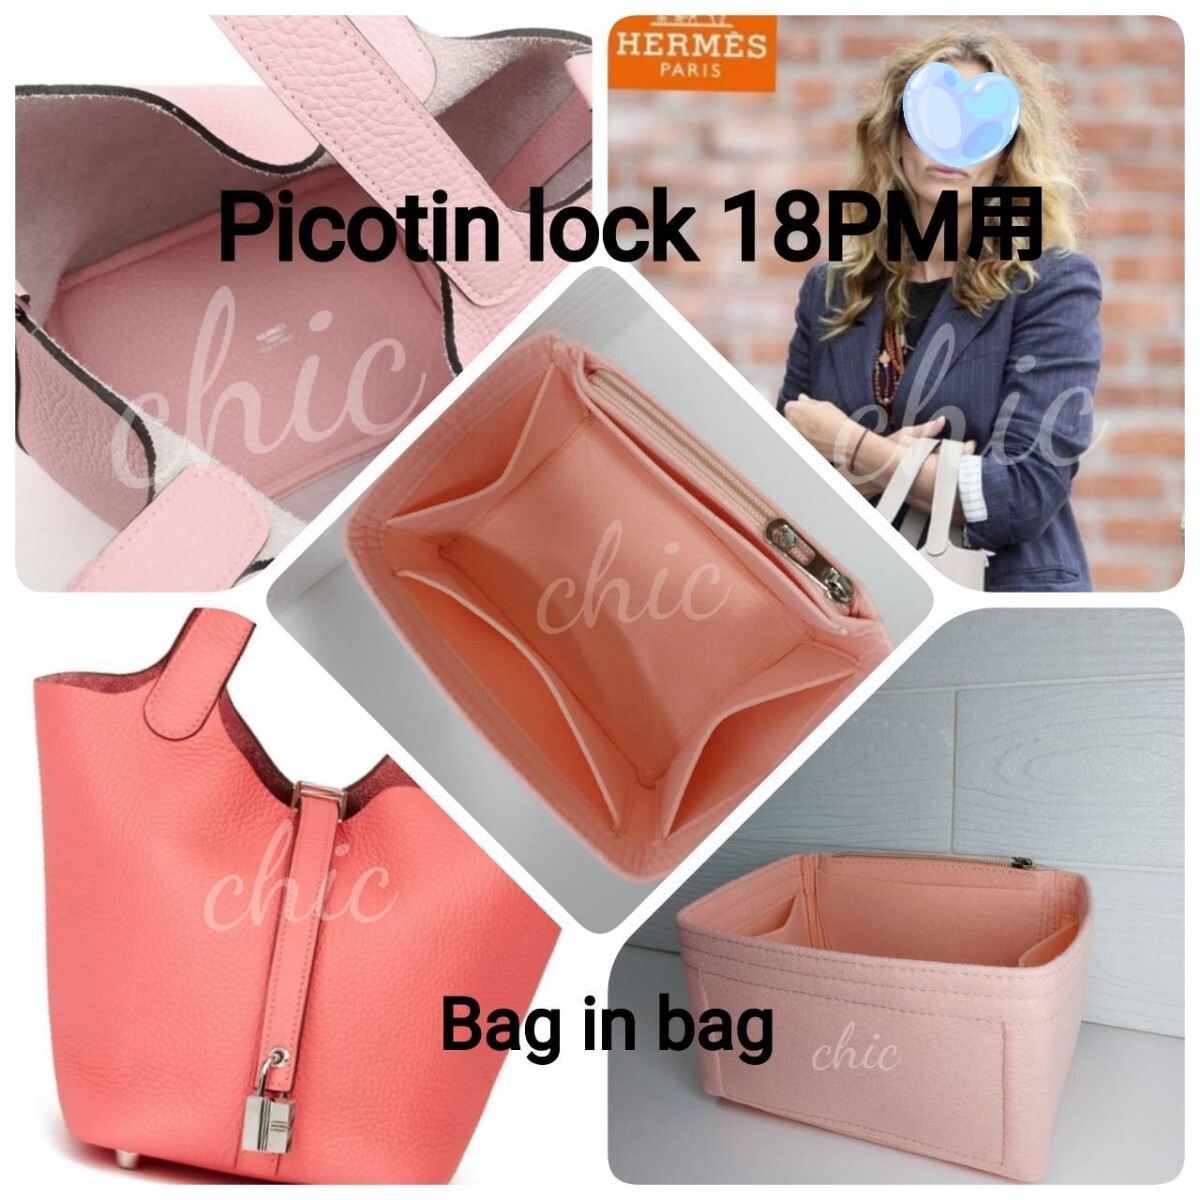 ピコタン18PM用 バッグインバッグ 季節限定カラー ローズサクラ 桃色 サクラピンク★内縫い 丈夫なフチ3本縫い インナーバッグ